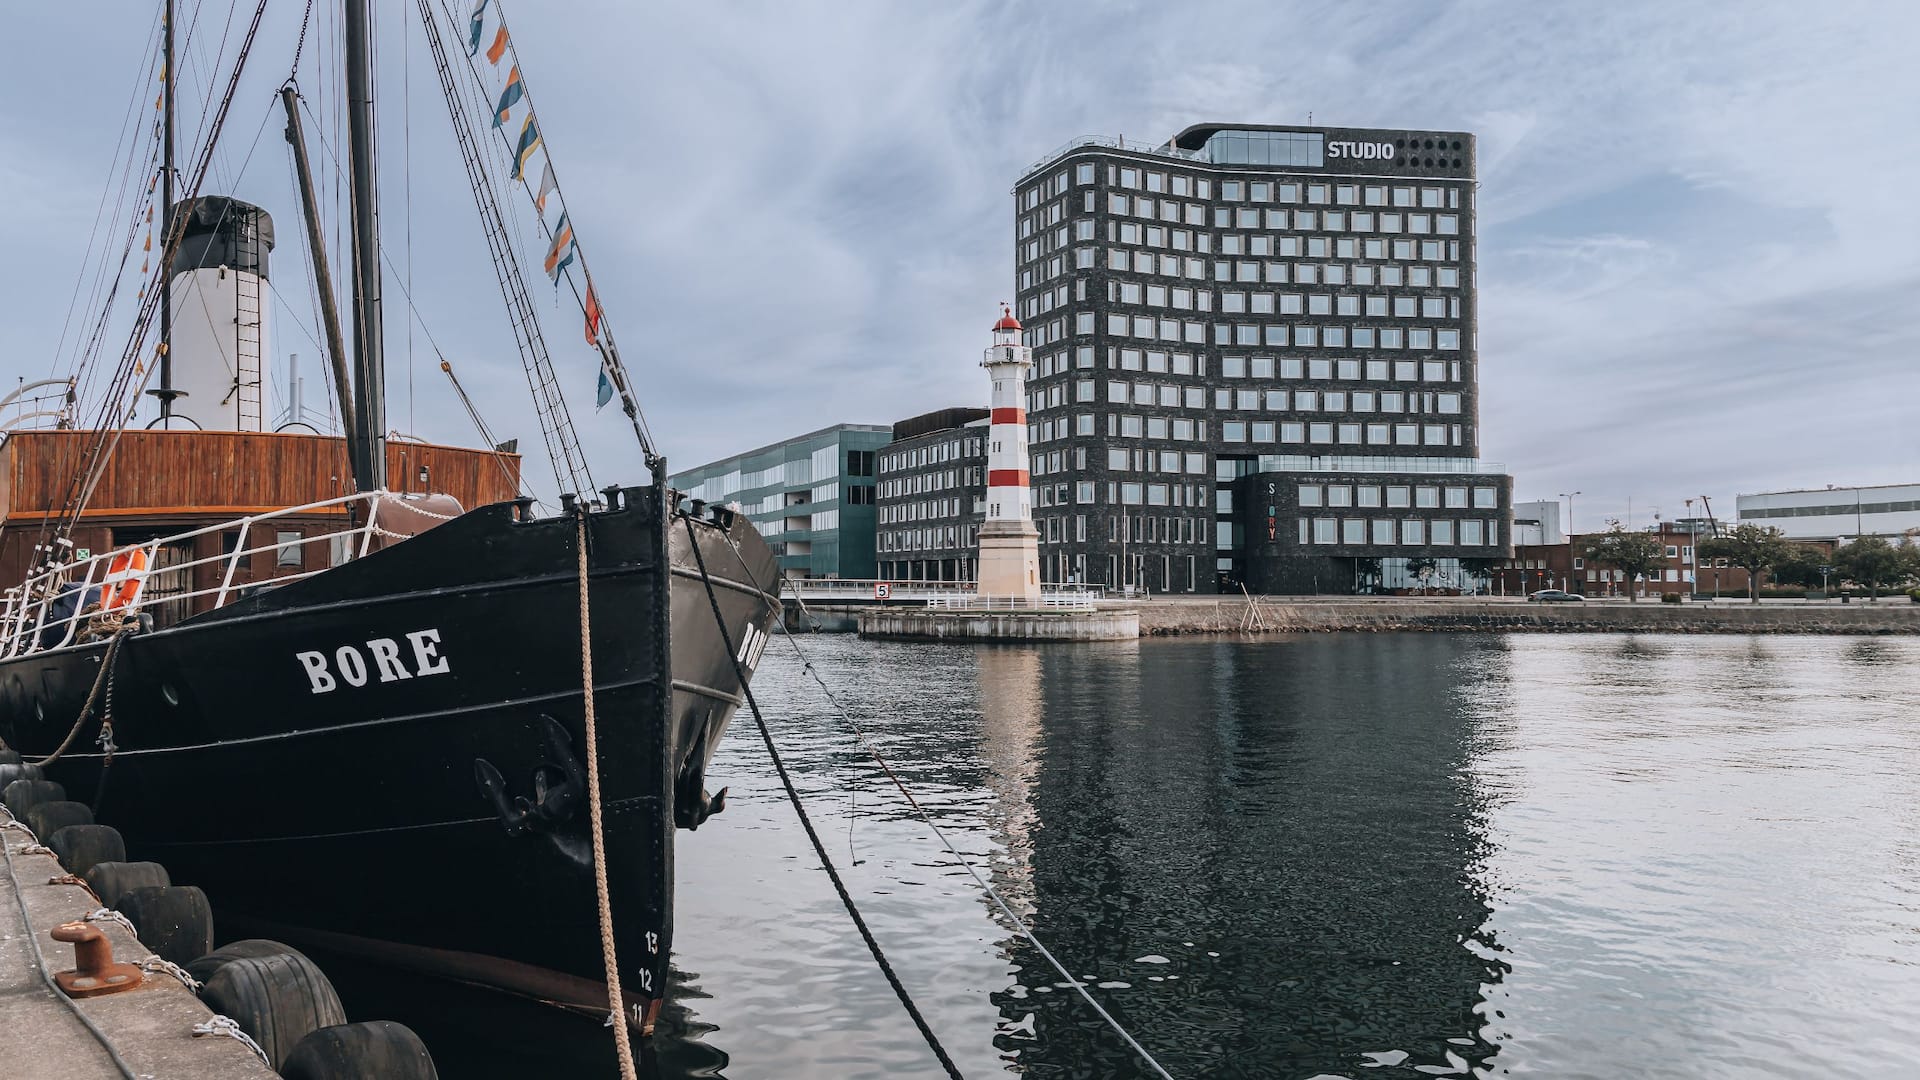 Story Hotel Studio Malmö och Malmö inre fyr, taget från vattnet med fartyget Bore i förgrunden